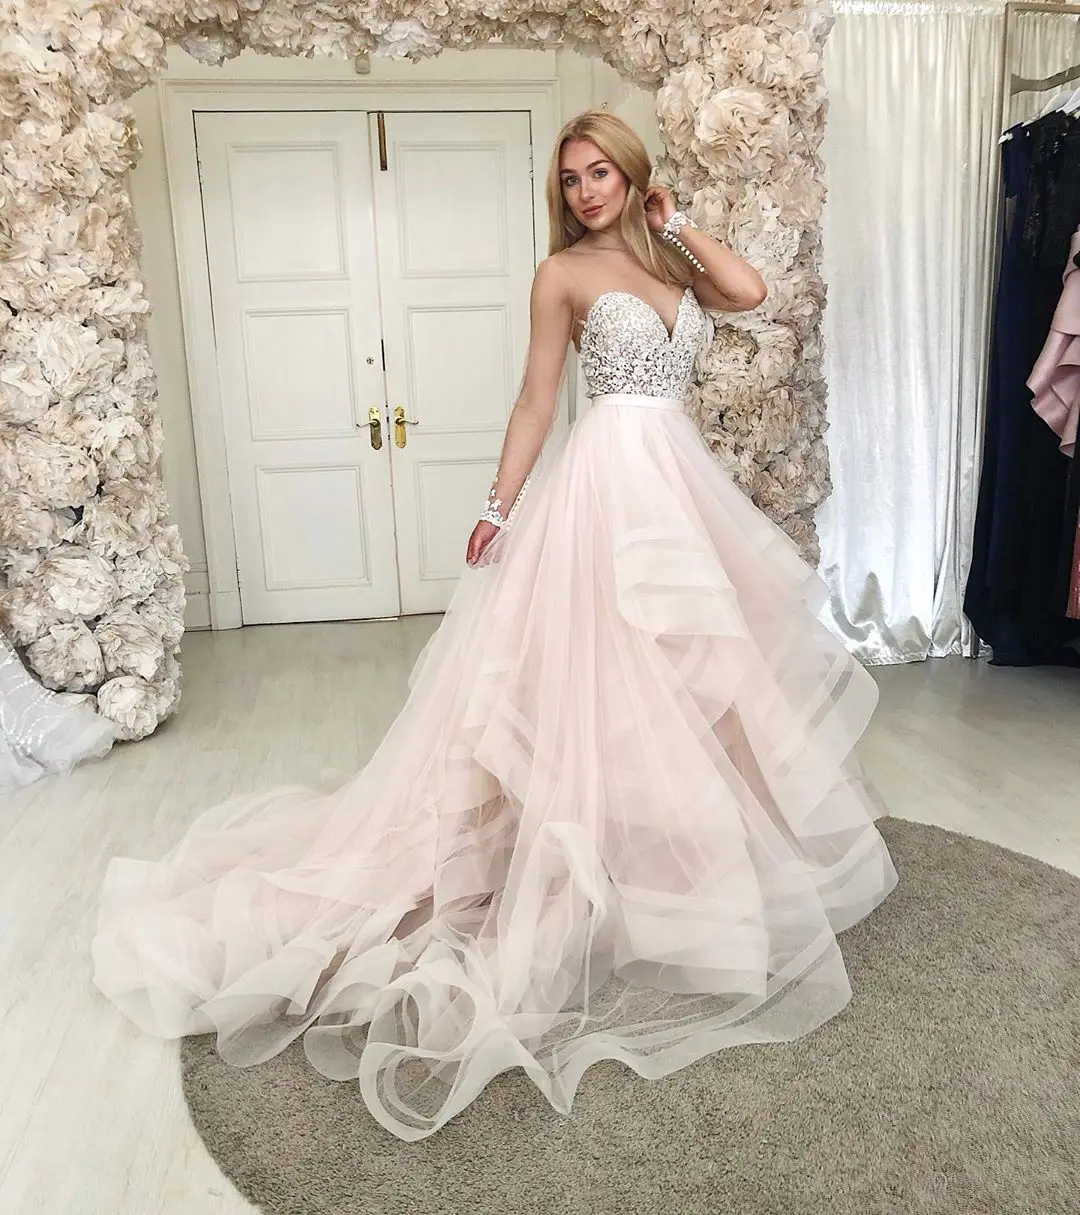 

Pink Long Prom Dresses 2022 Sweetheart Lace Organza Sukienki Vestido De Festa Gala Jurken Formal Evening Gown Party Dress